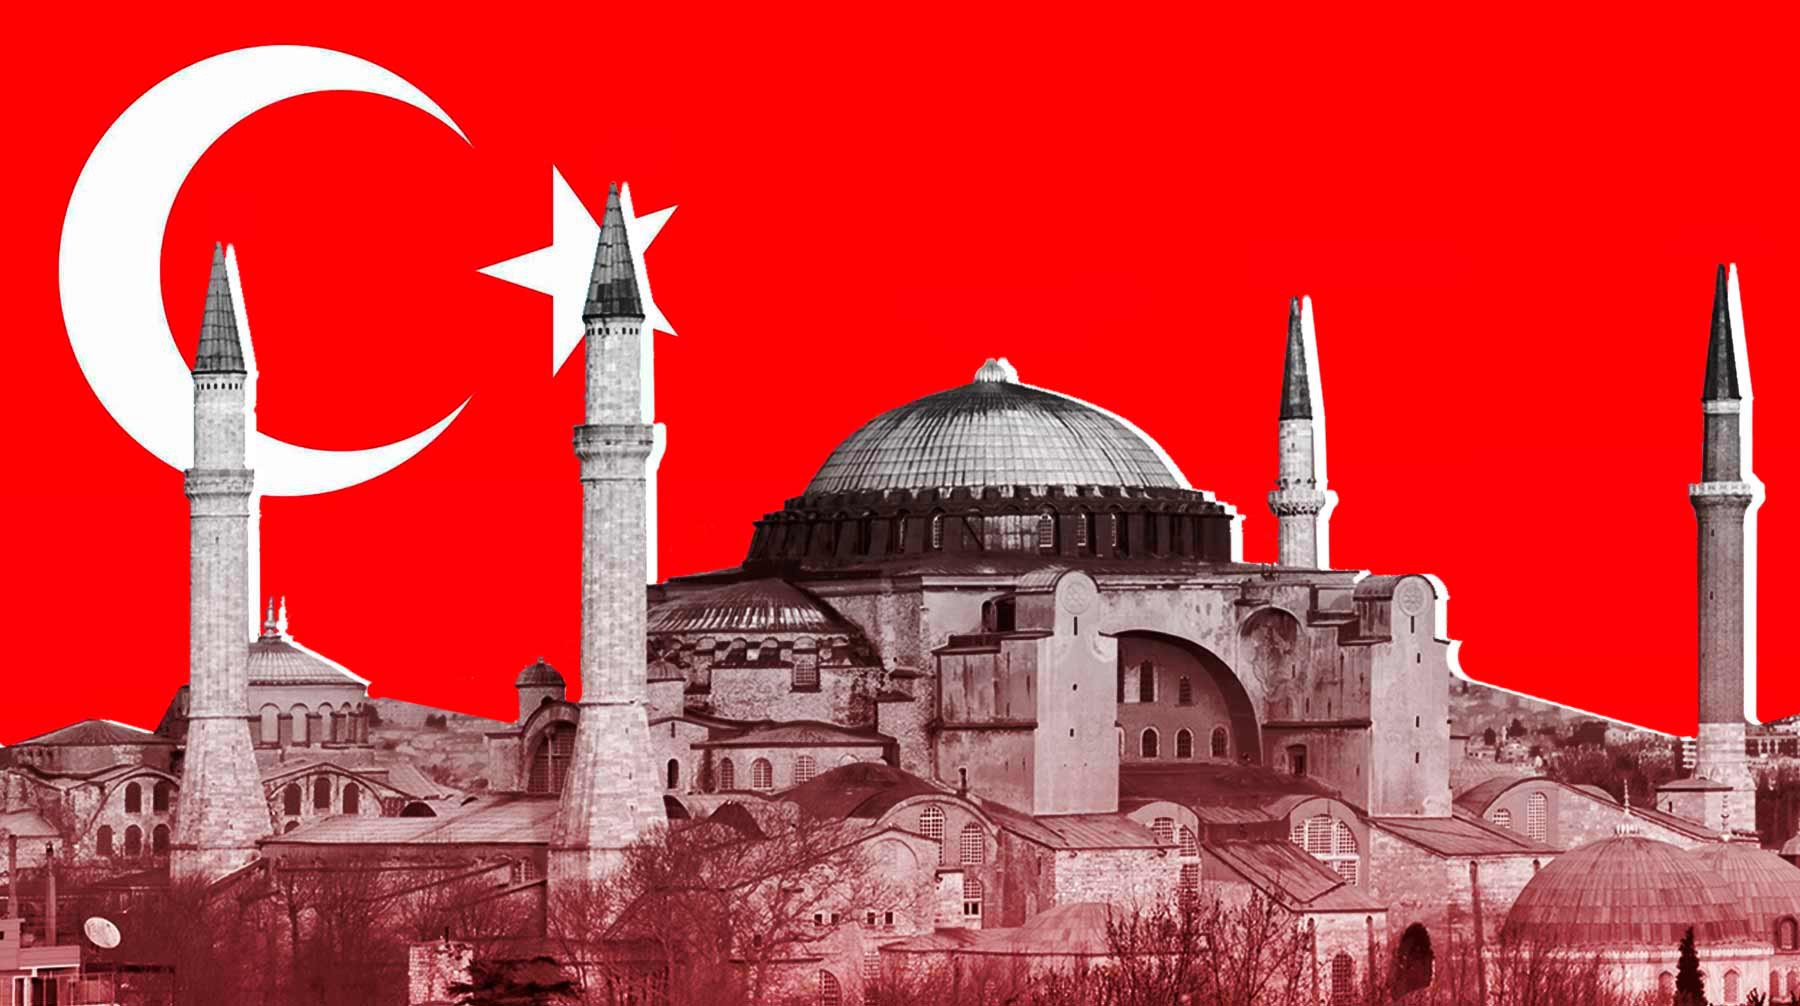 Dailystorm - «Символ завоевания Стамбула». Турецкий политик рассказал о значении собора Святой Софии для народа